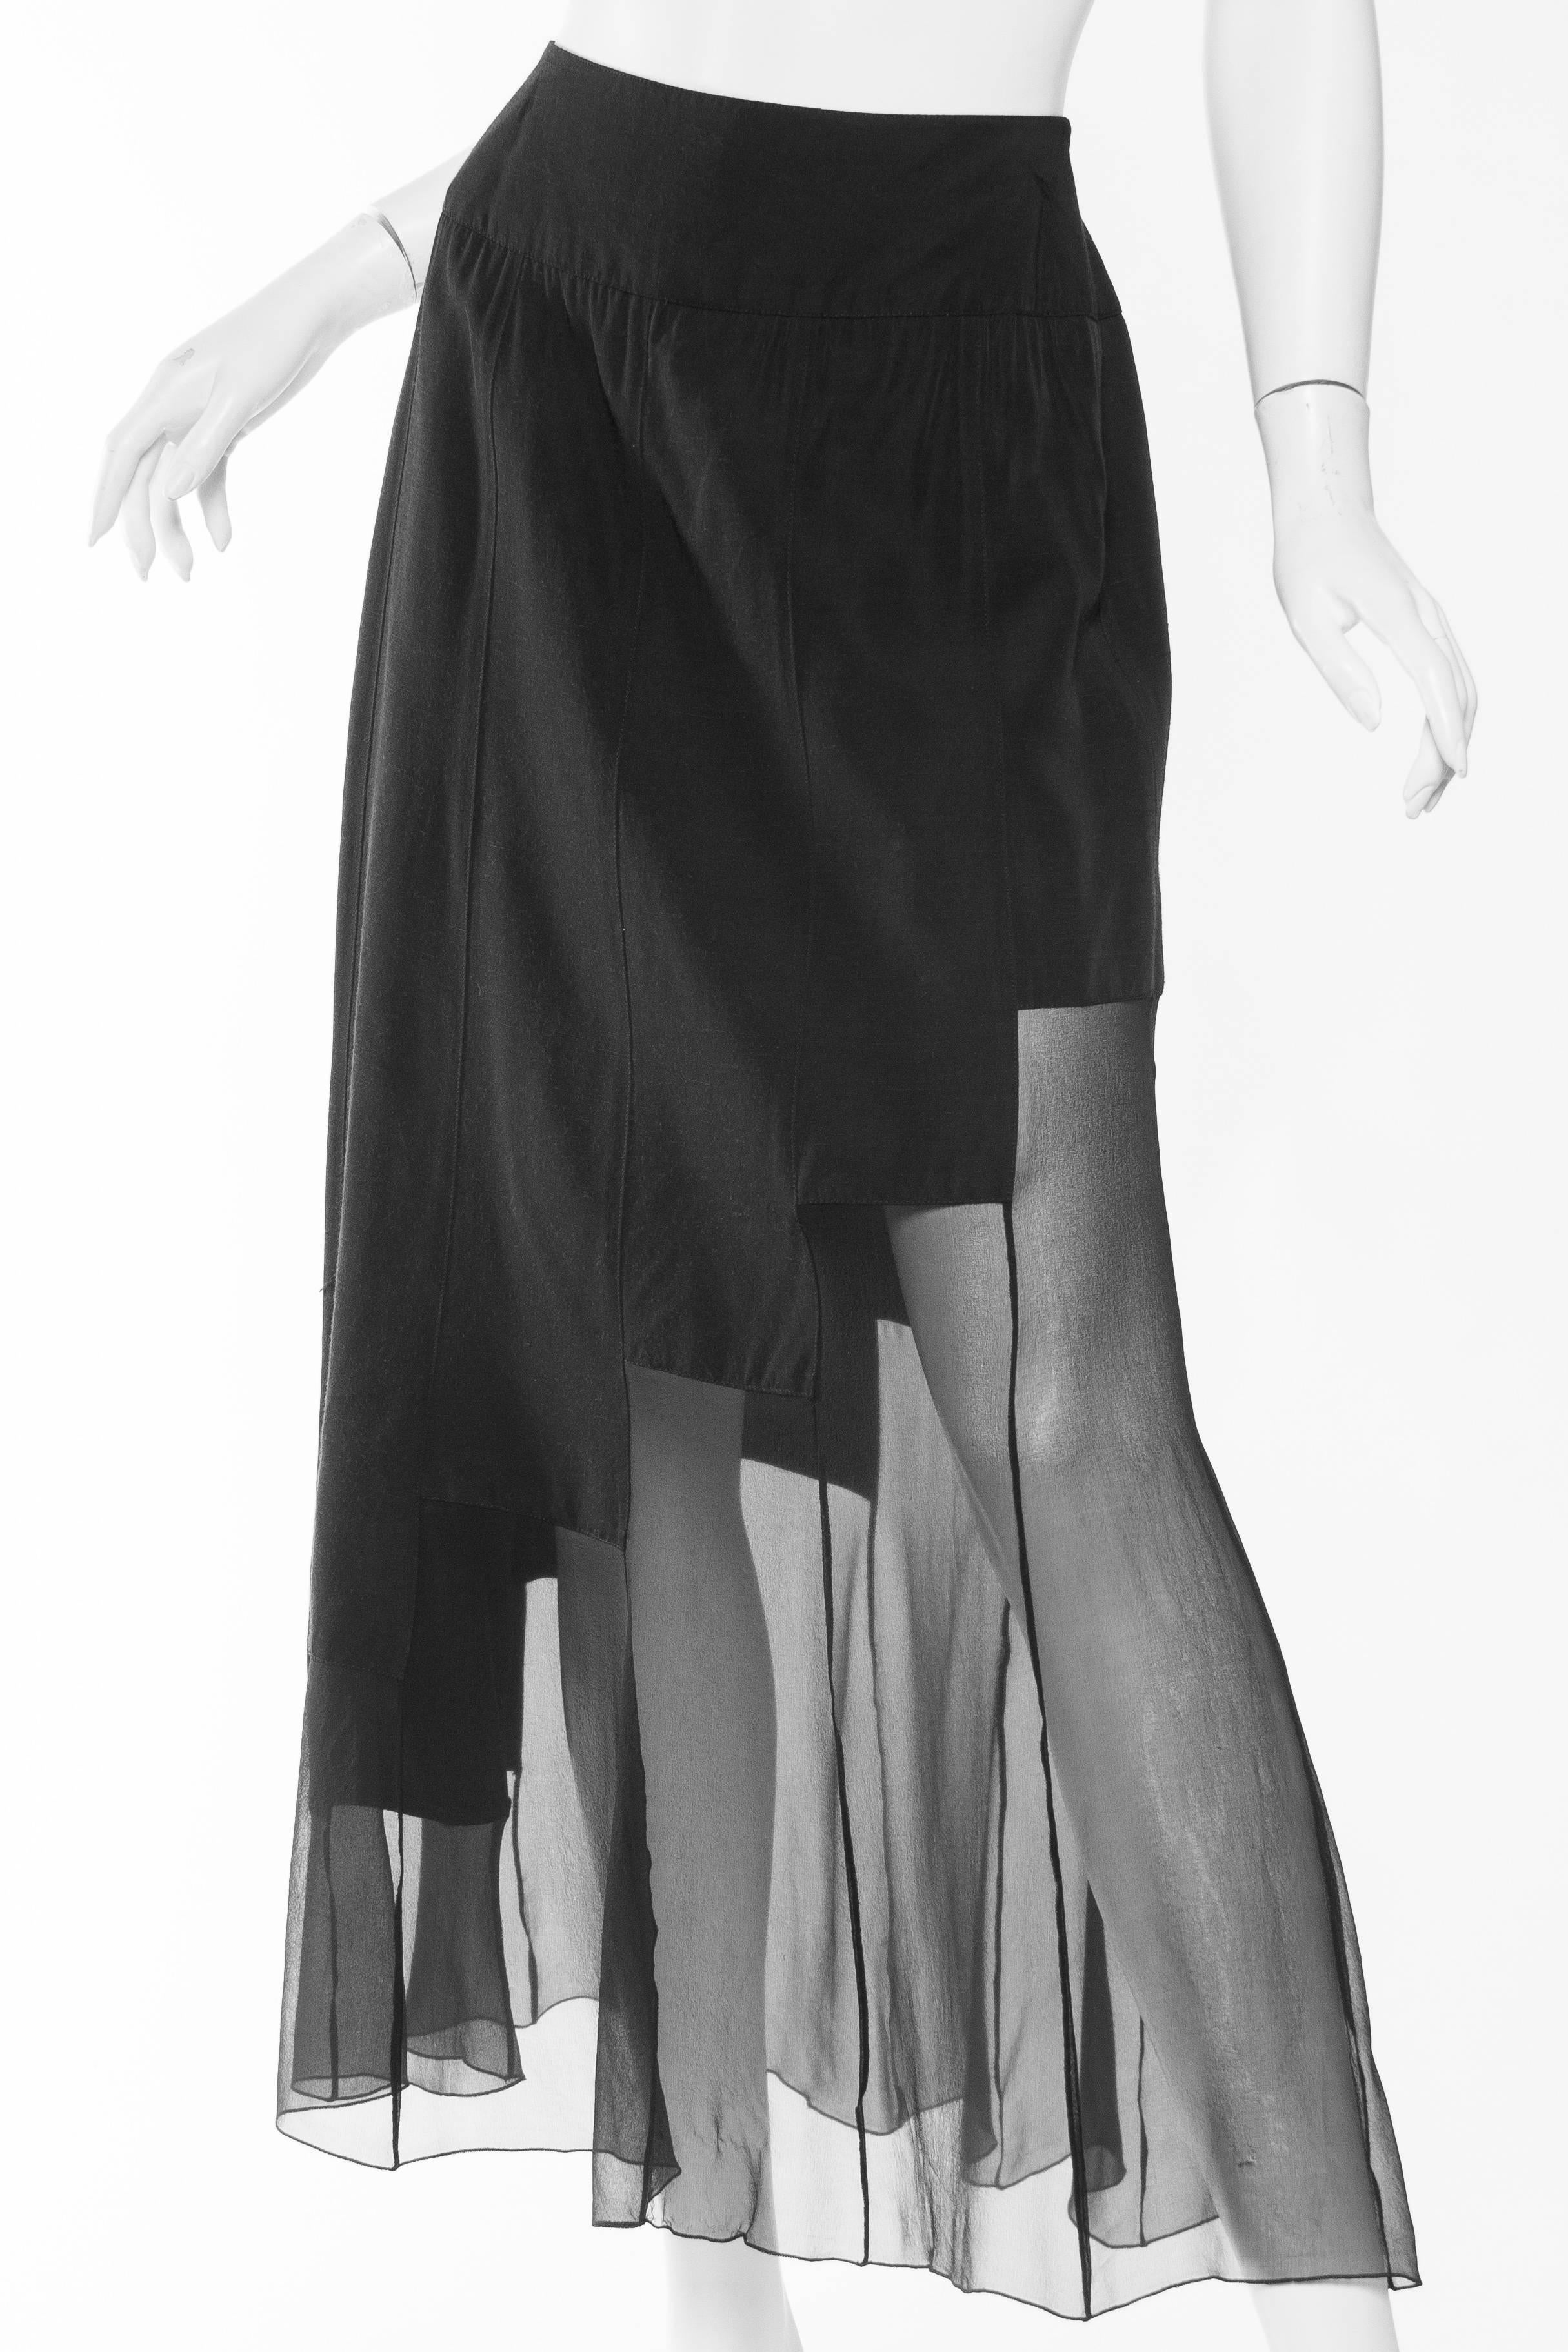 Women's 1980s Karl Lagerfeld Sheer Memphis Deco Skirt